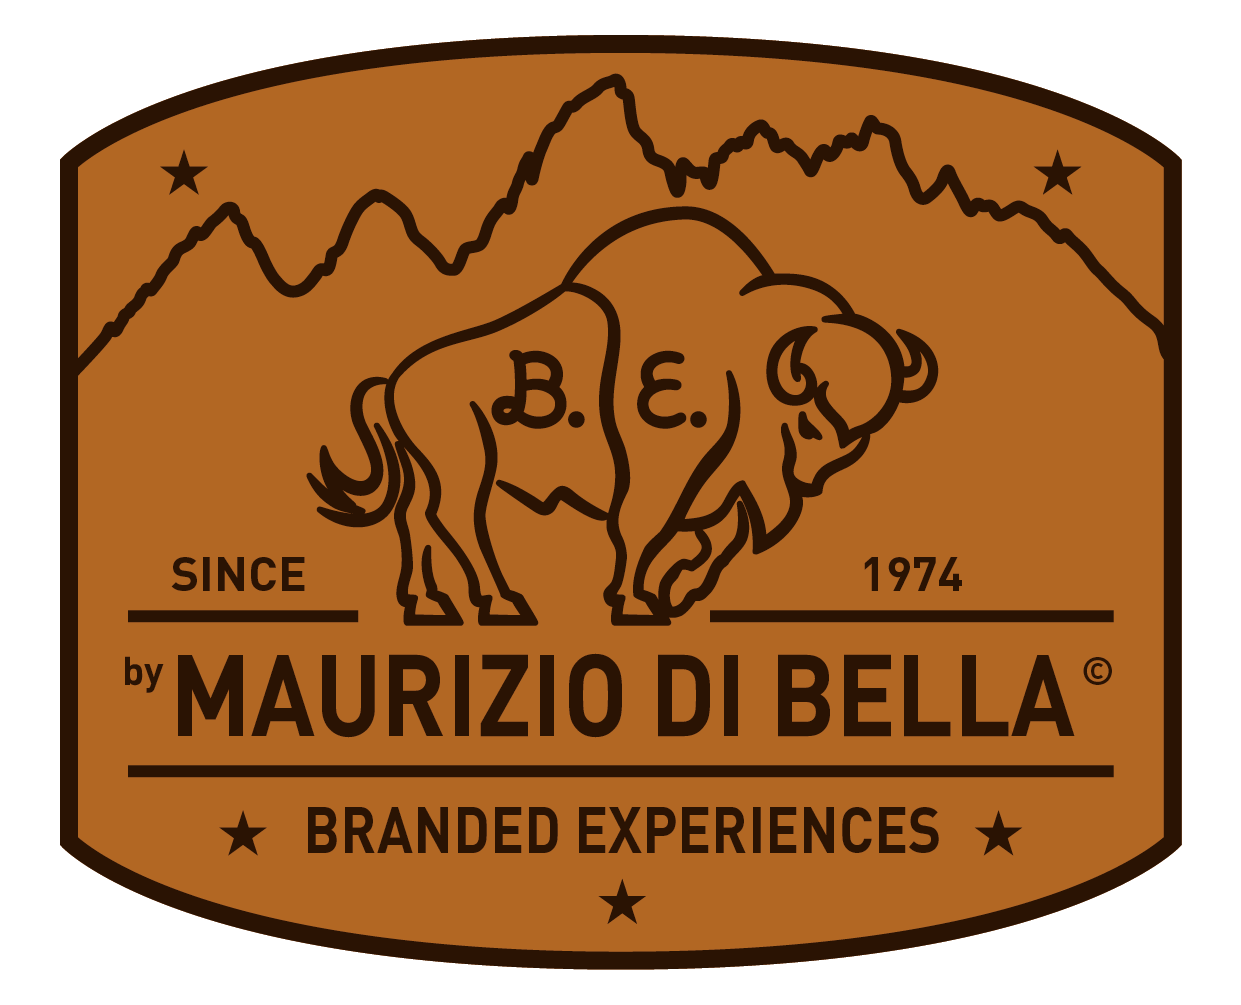 B.E. by Maurizio Di Bella - Branded Experiences, Since 1974